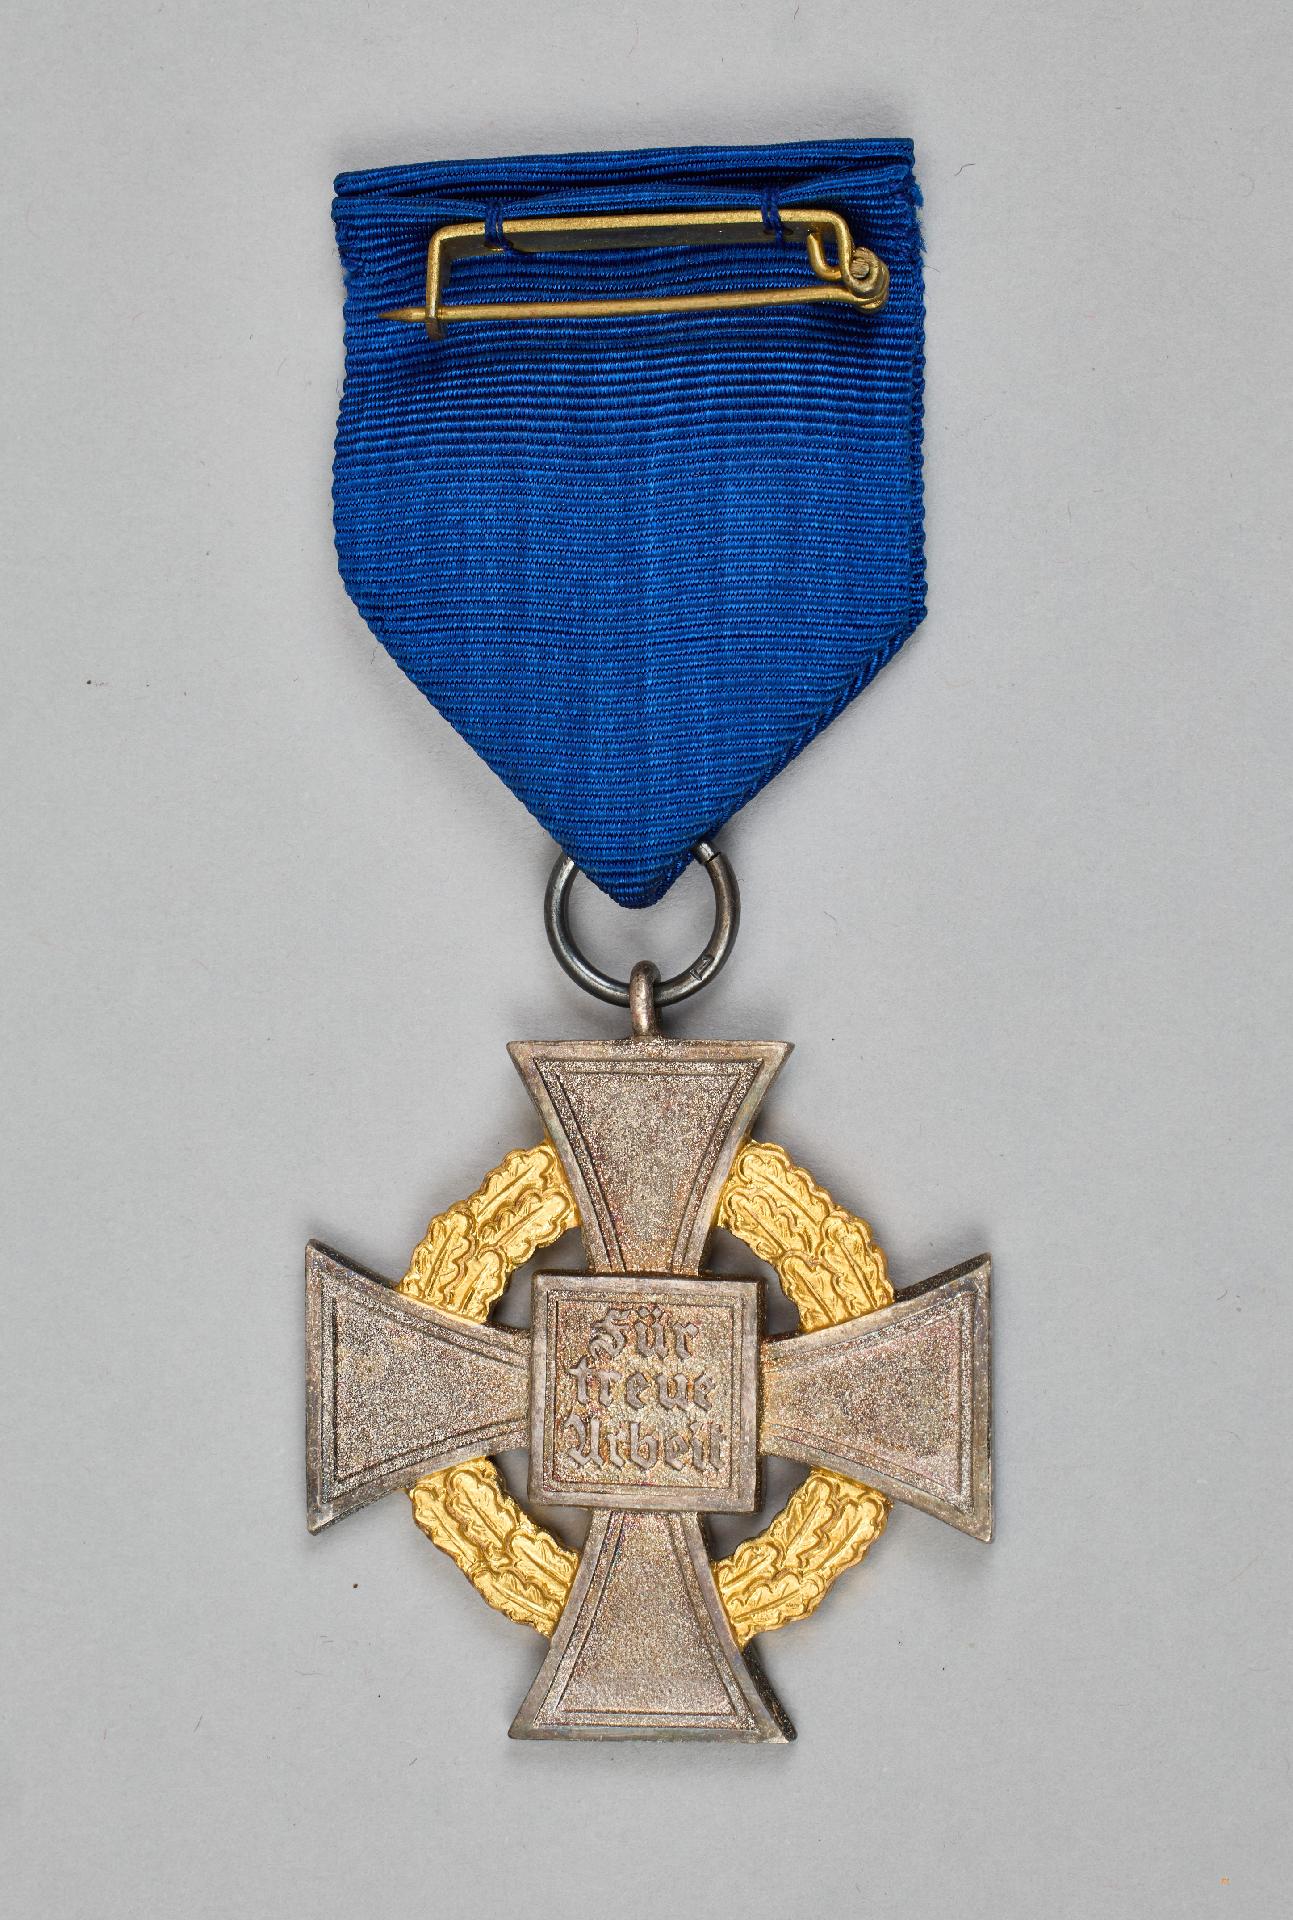 Civil Orders and Medals : Treuedienst -Ehrenzeichen - Sonderstufe mit der Zahl 50 - Image 5 of 5